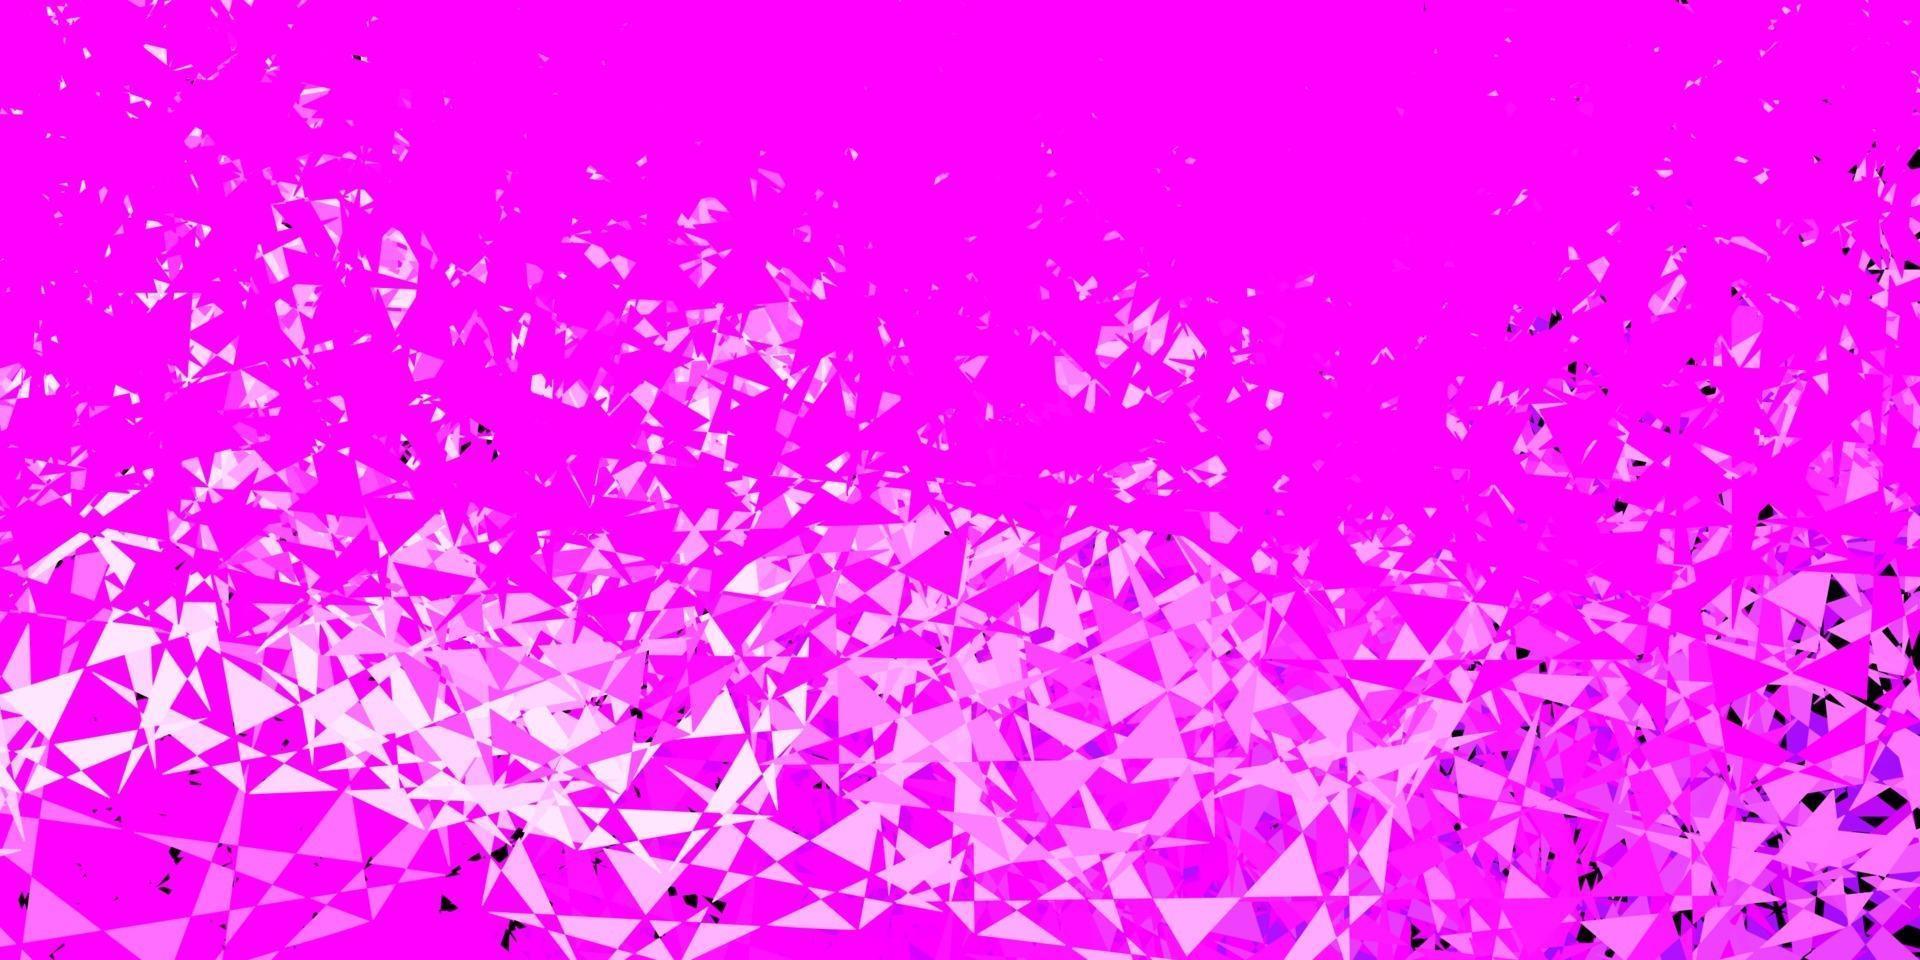 modèle vectoriel violet clair, rose avec des formes triangulaires.